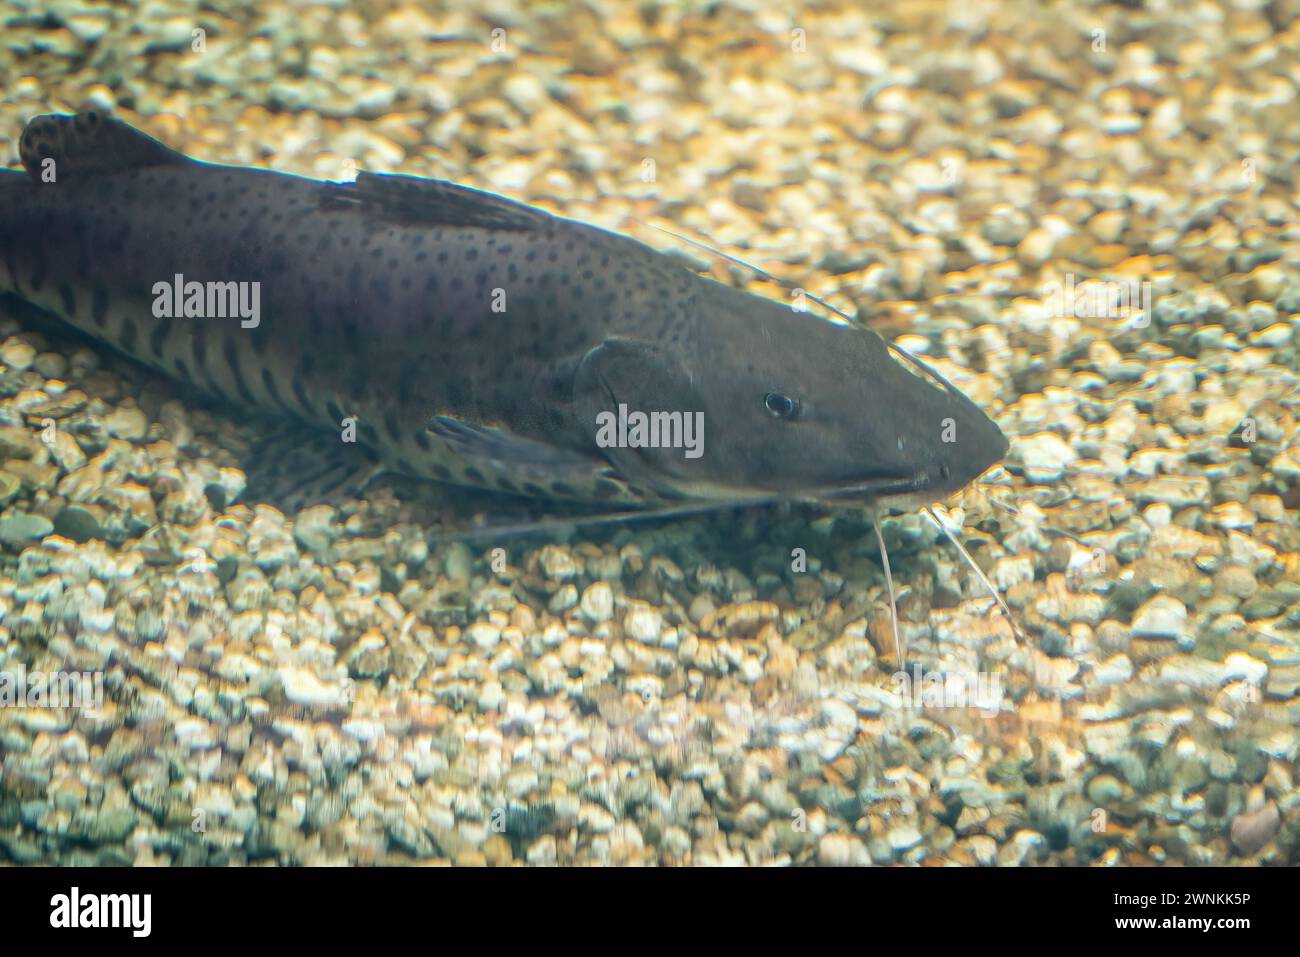 Poisson-chat sorubim tacheté (Pseudoplatystoma corruscans) - poisson d'eau douce Banque D'Images